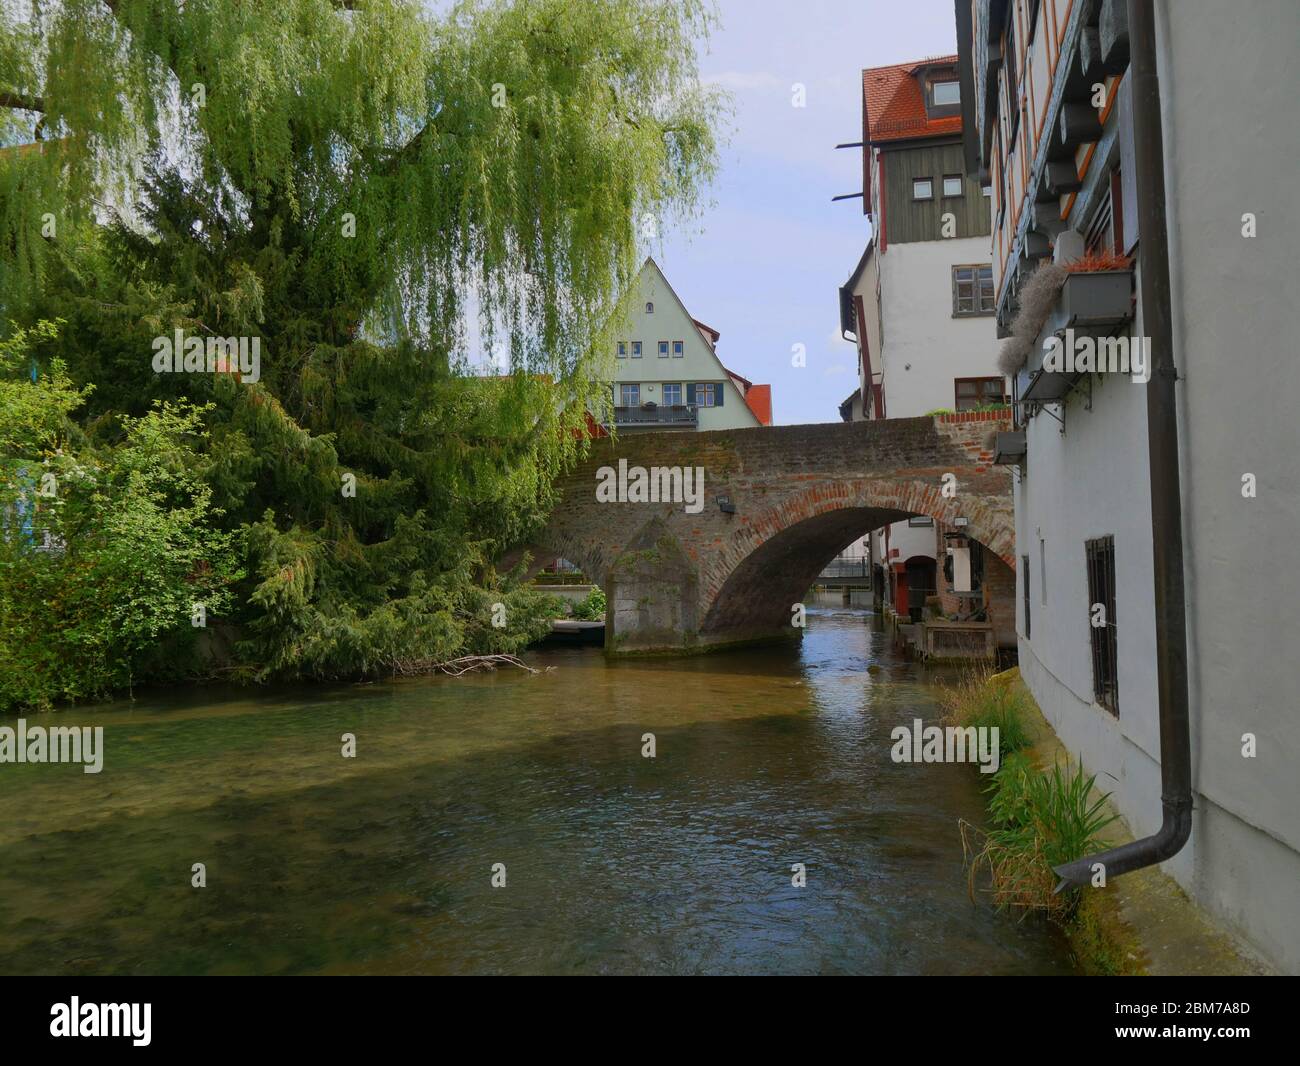 Ulm, Allemagne : pont historique dans le quartier des pêcheurs Banque D'Images